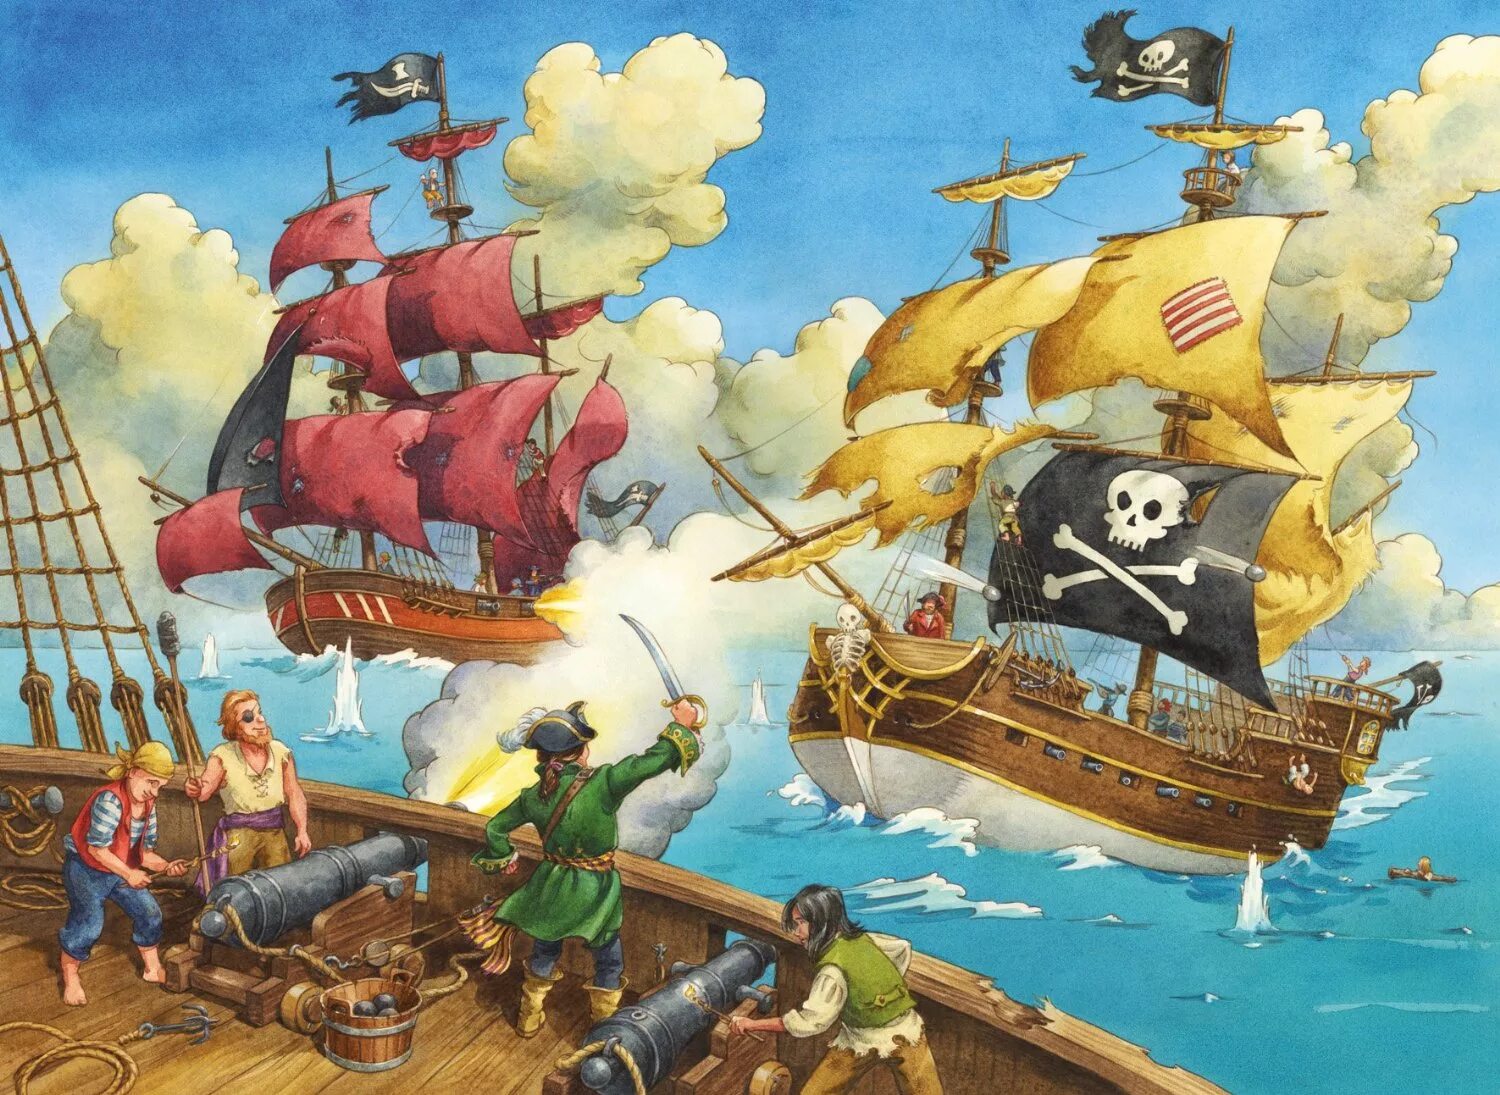 Нападение пиратов. Пазл Равенсбург пираты. Ravensburger 12 771 9 пираты. Пиратский корабль. Пазл пиратский корабль.